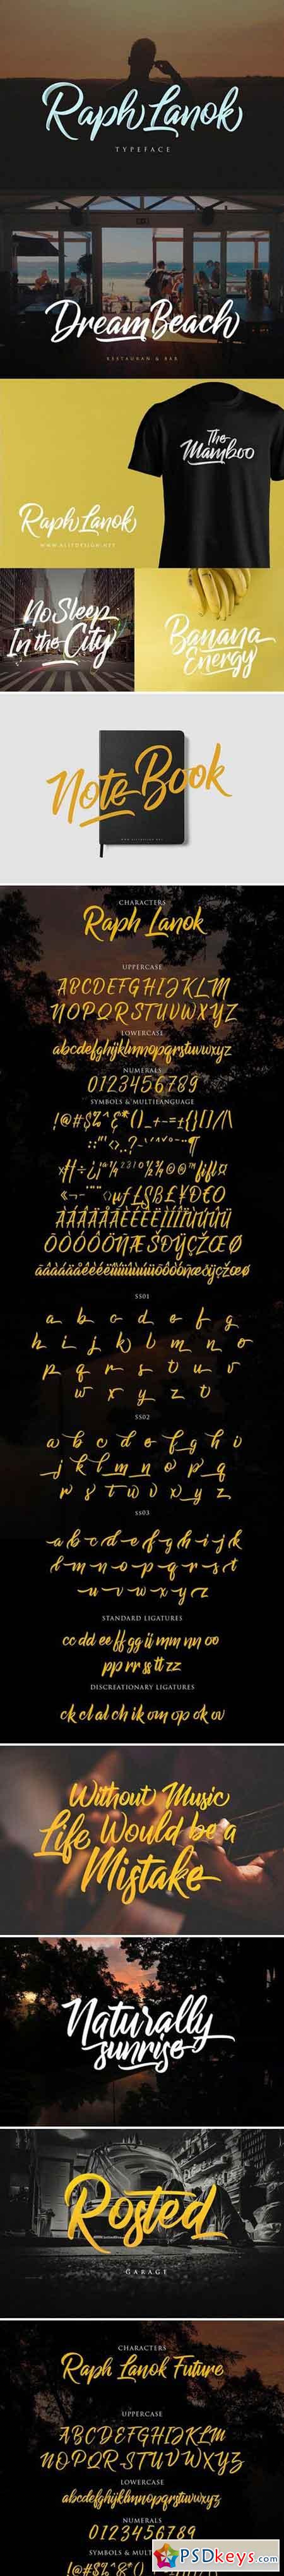 Raph Lanok Typeface 1643862